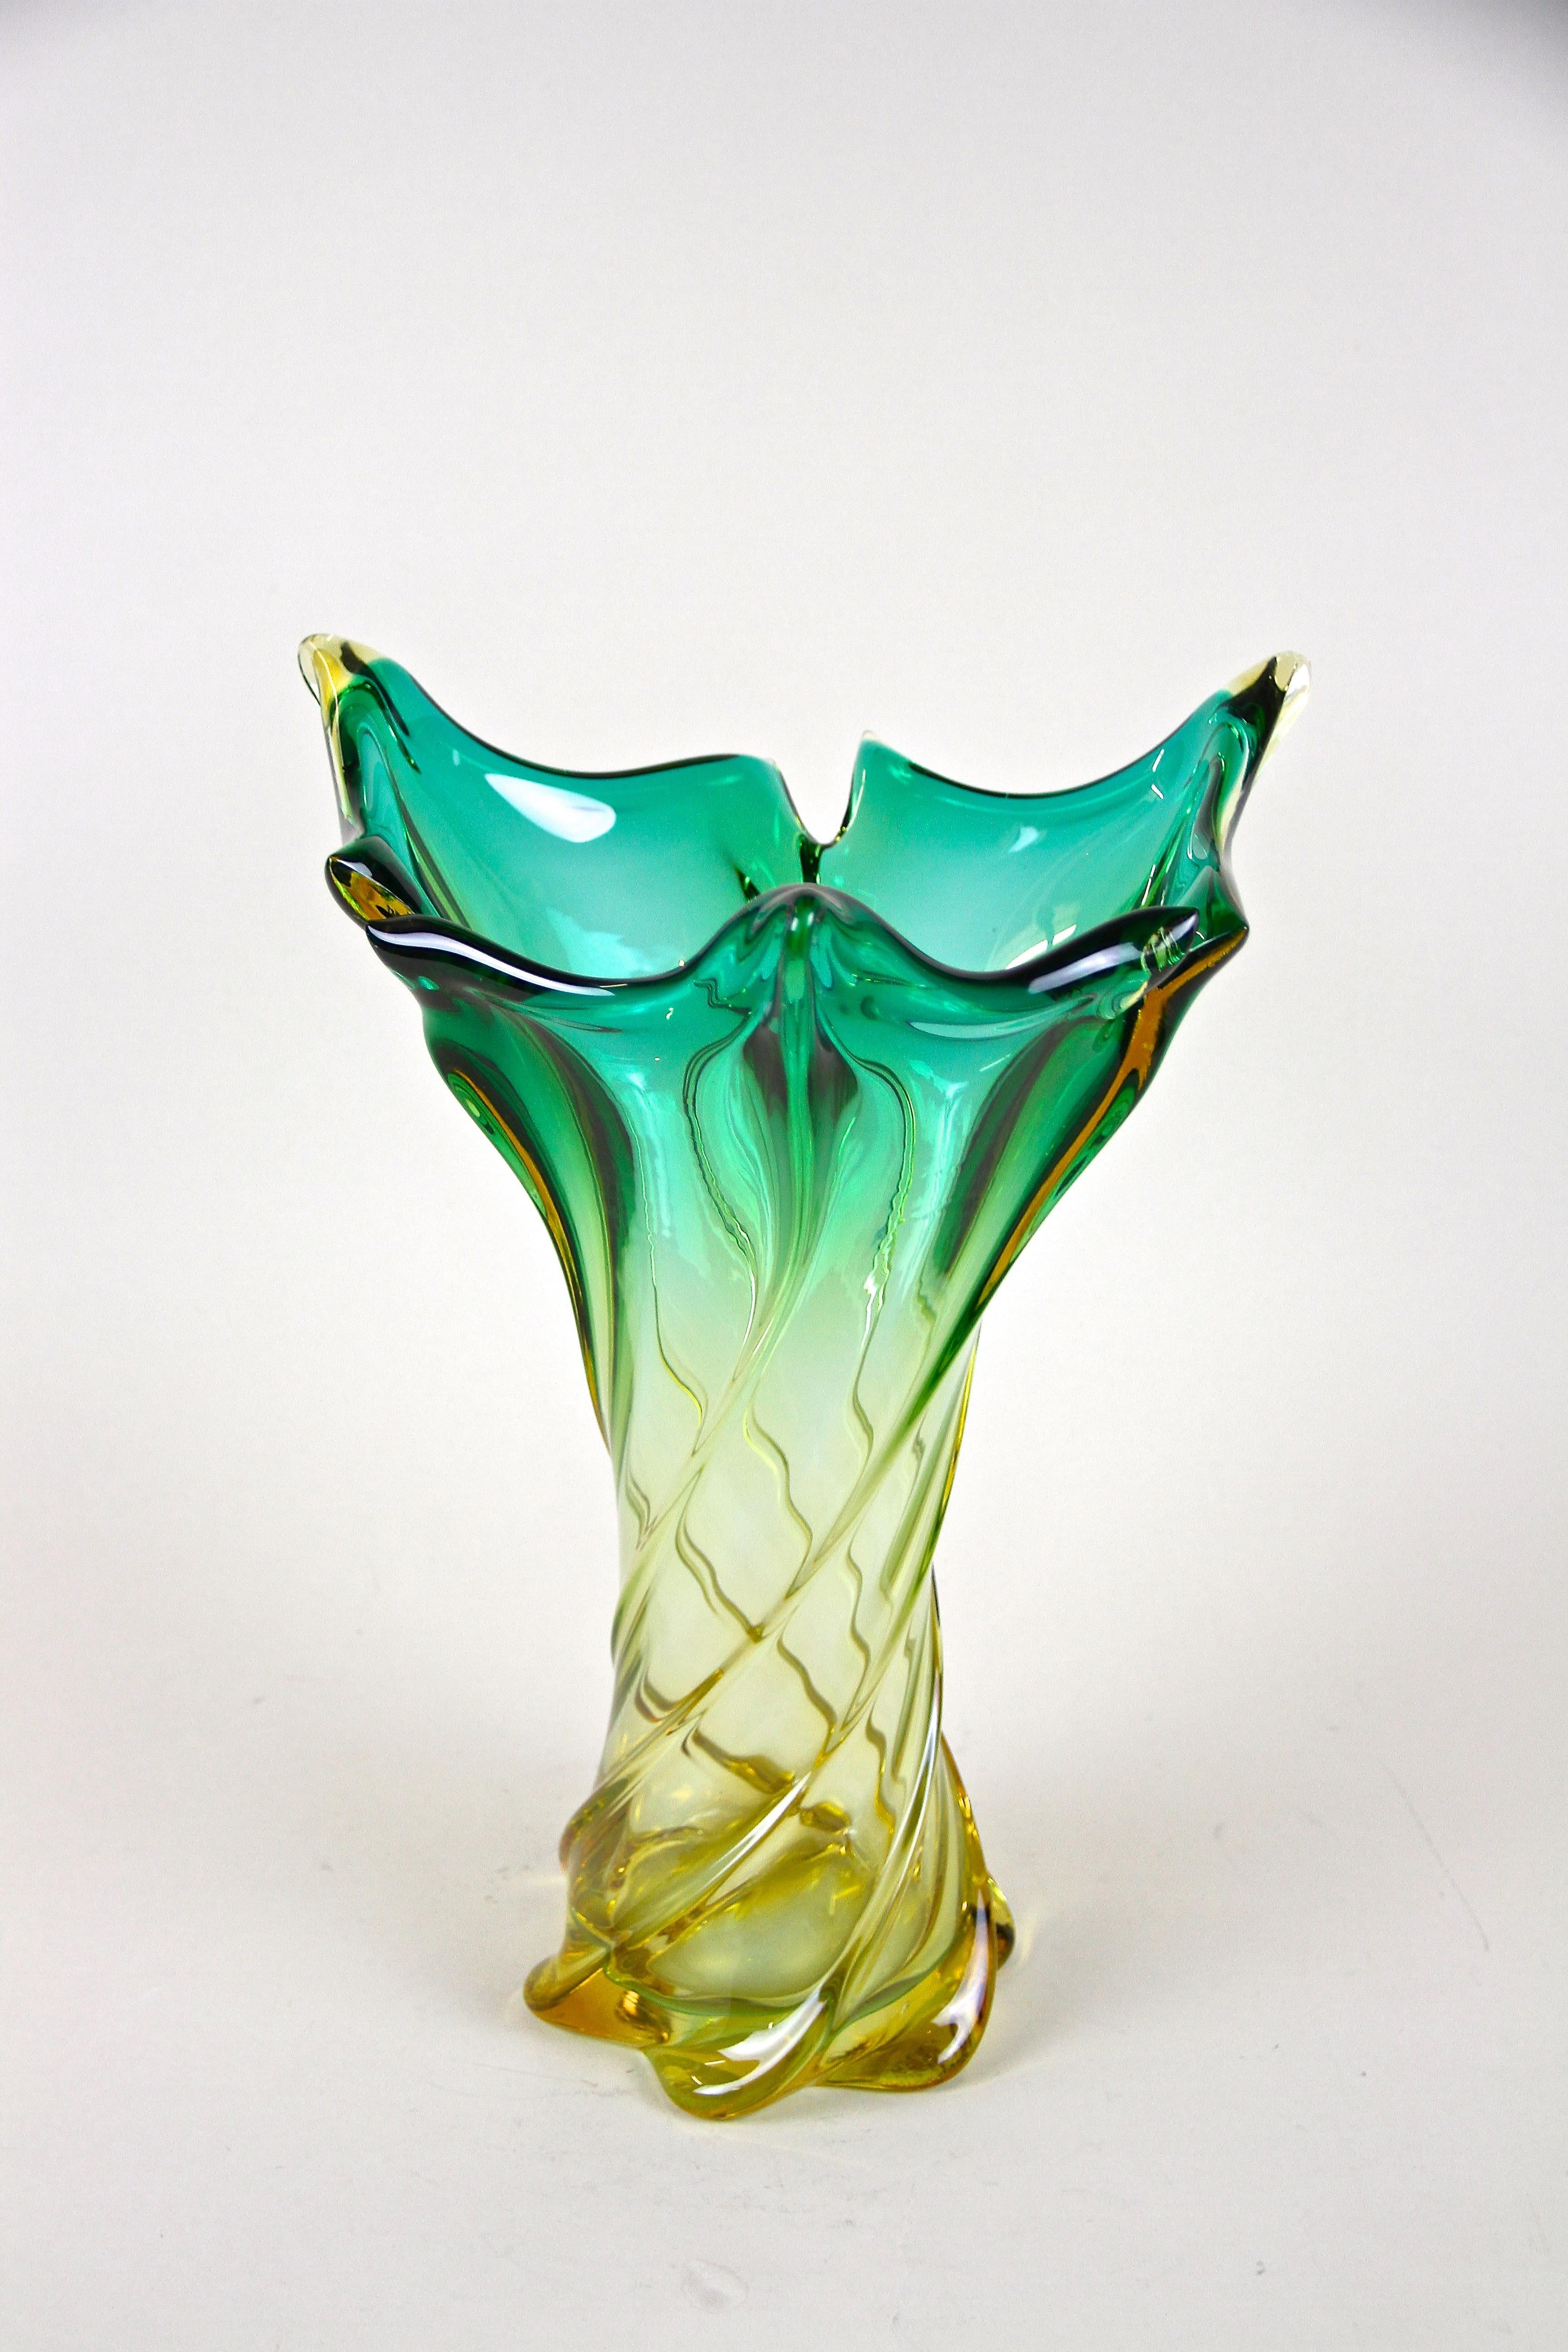 Grand vase en verre de Murano du milieu du siècle, magnifiquement formé, provenant des ateliers renommés d'Italie vers 1960. Un article exceptionnel avec un corps torsadé combiné à une coloration fantastique. Des tons verts brillants au jaune en